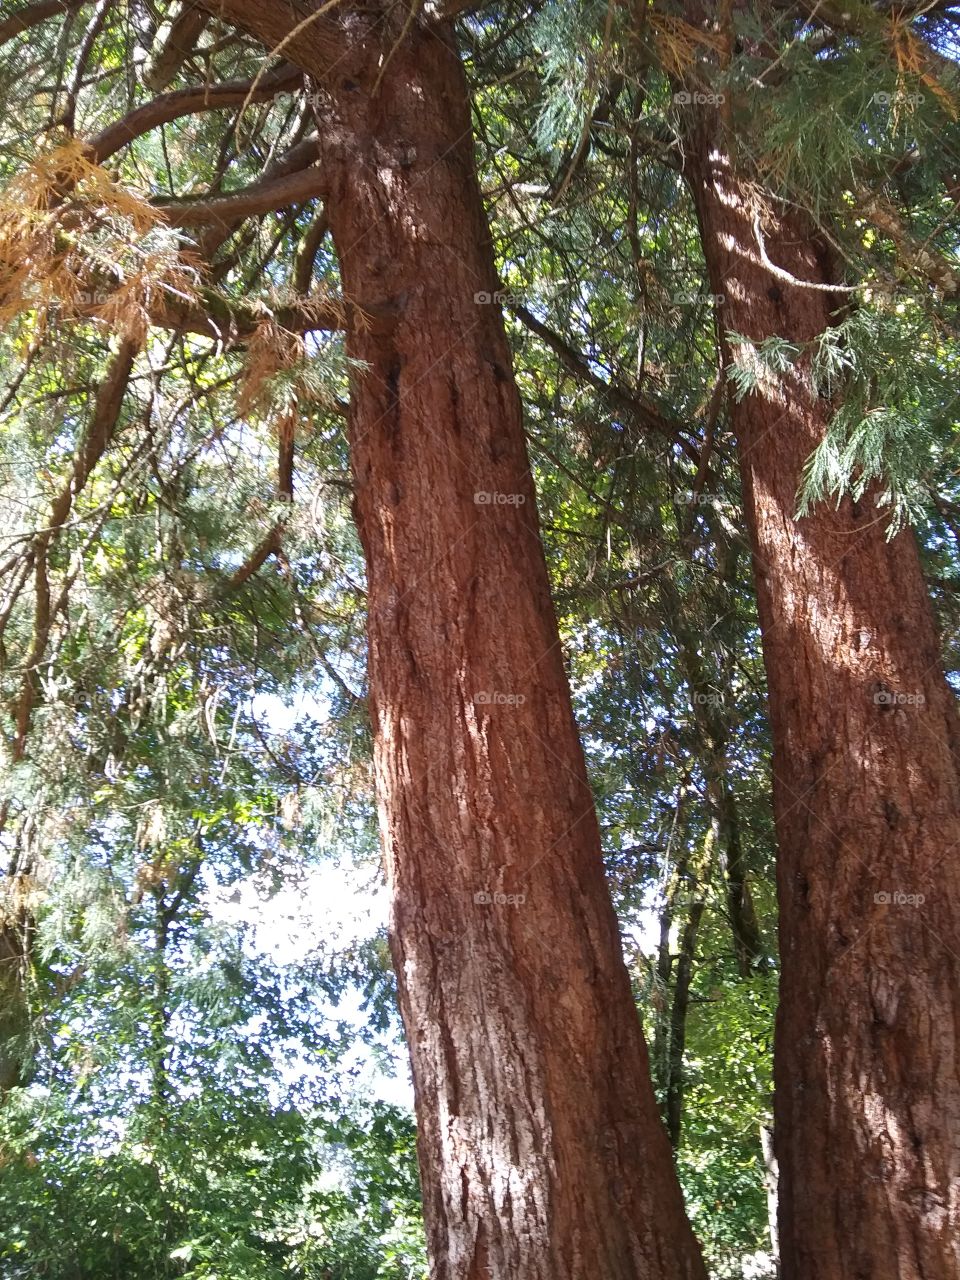 Giant sequoia